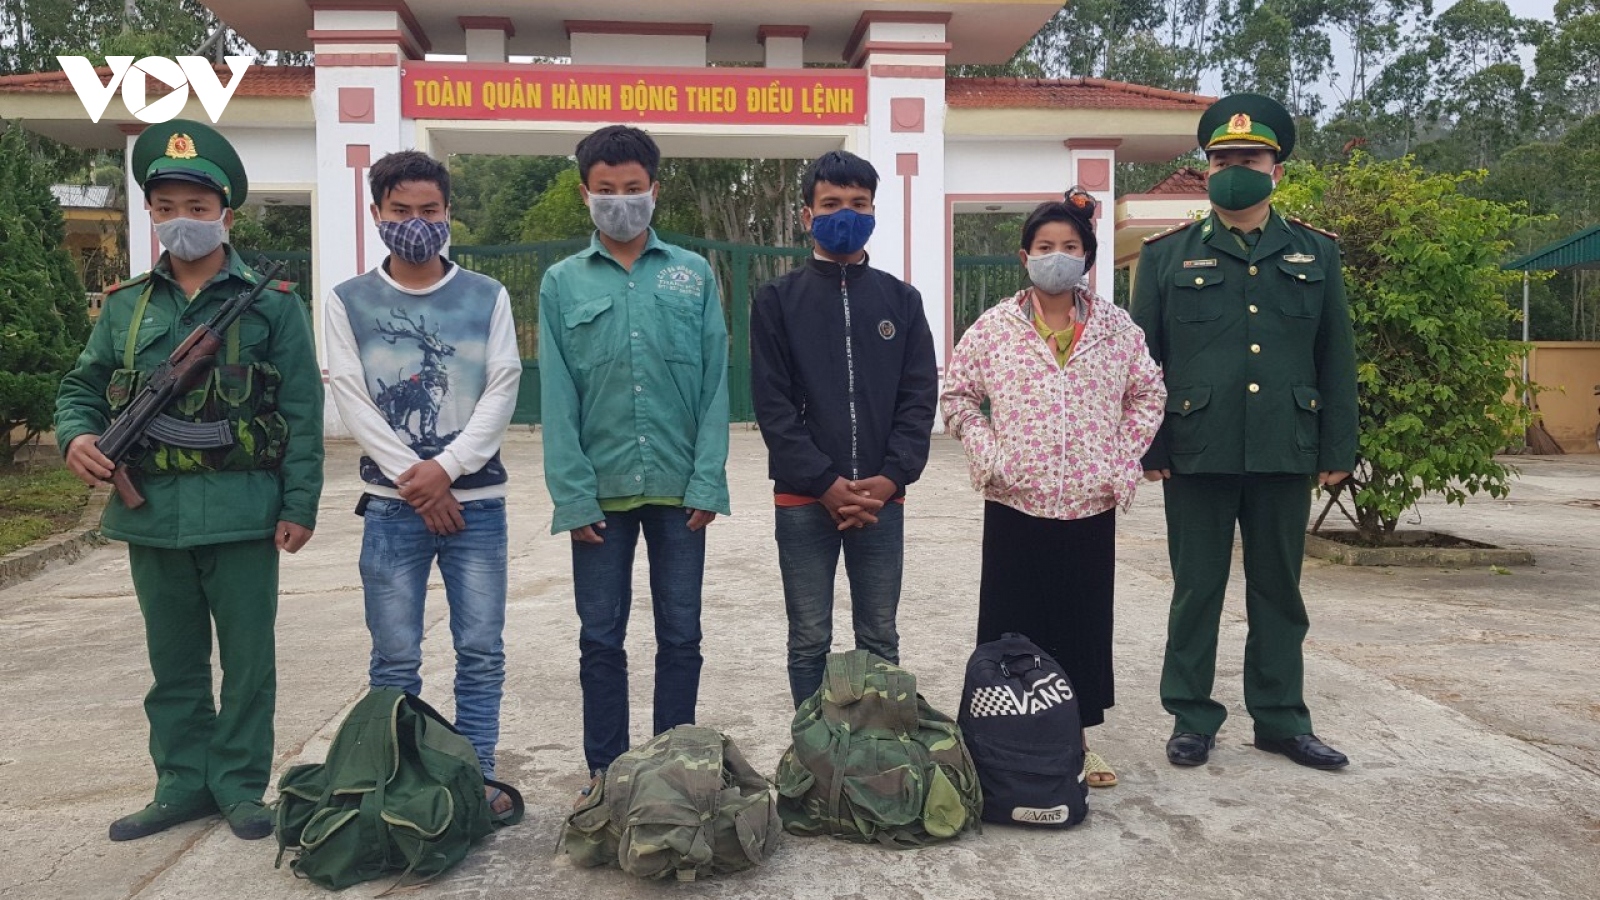 Điện Biên bắt giữ 4 đối tượng người Lào vượt biên trái phép